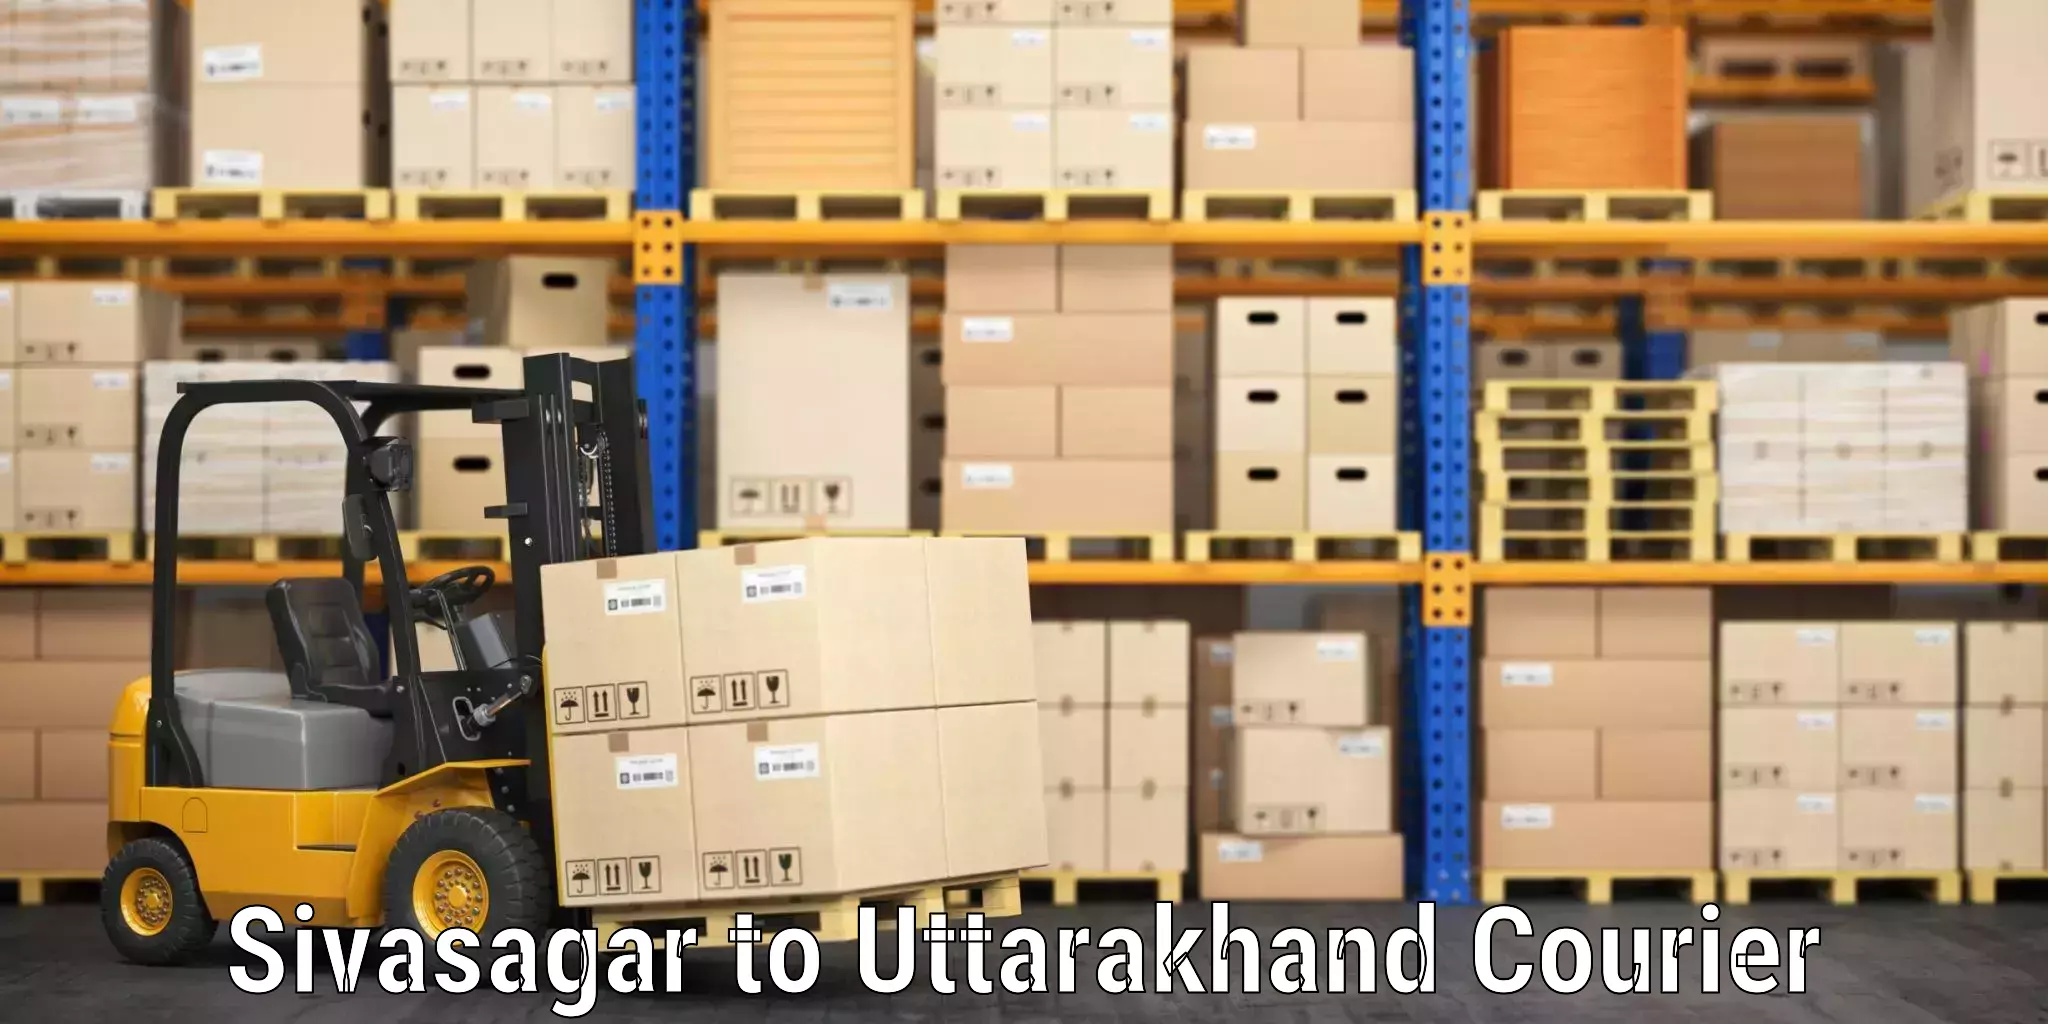 Luggage transport logistics Sivasagar to Bageshwar